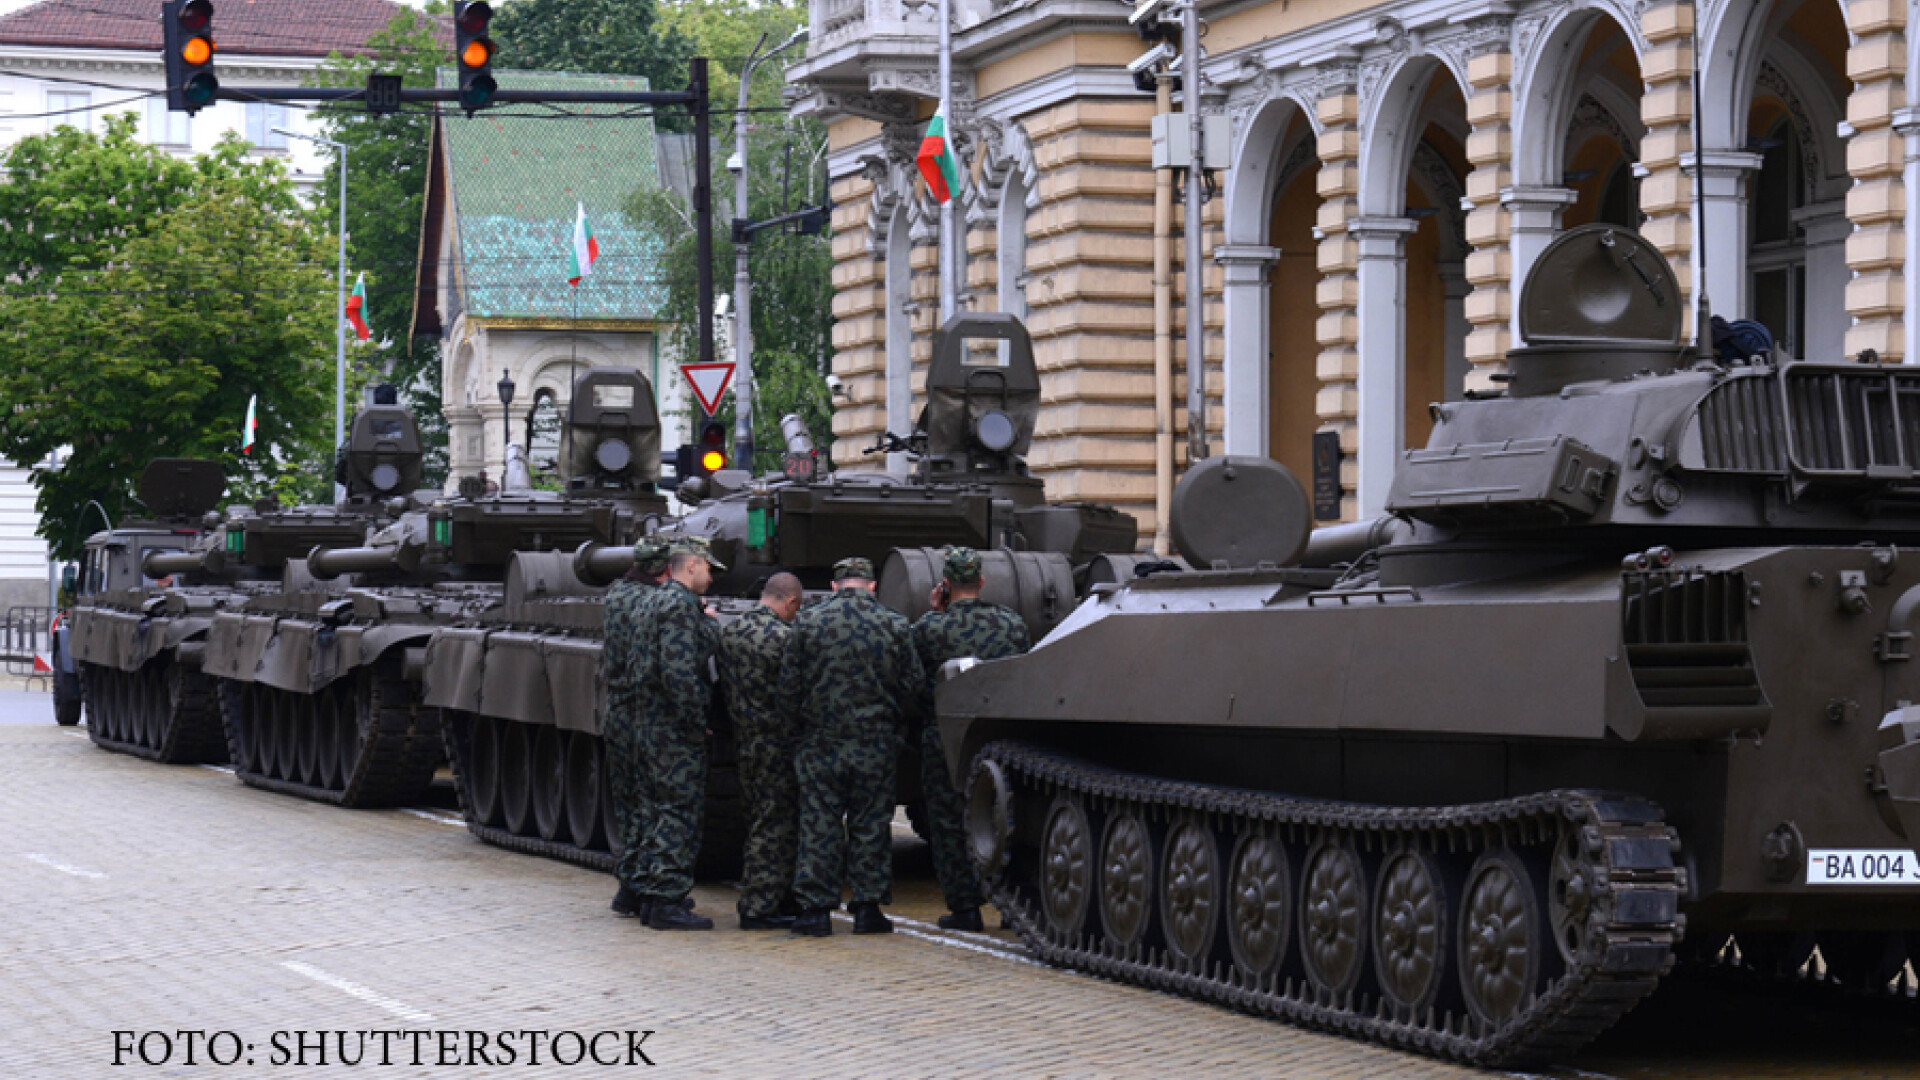 parada militara in Varna, armata bulgara